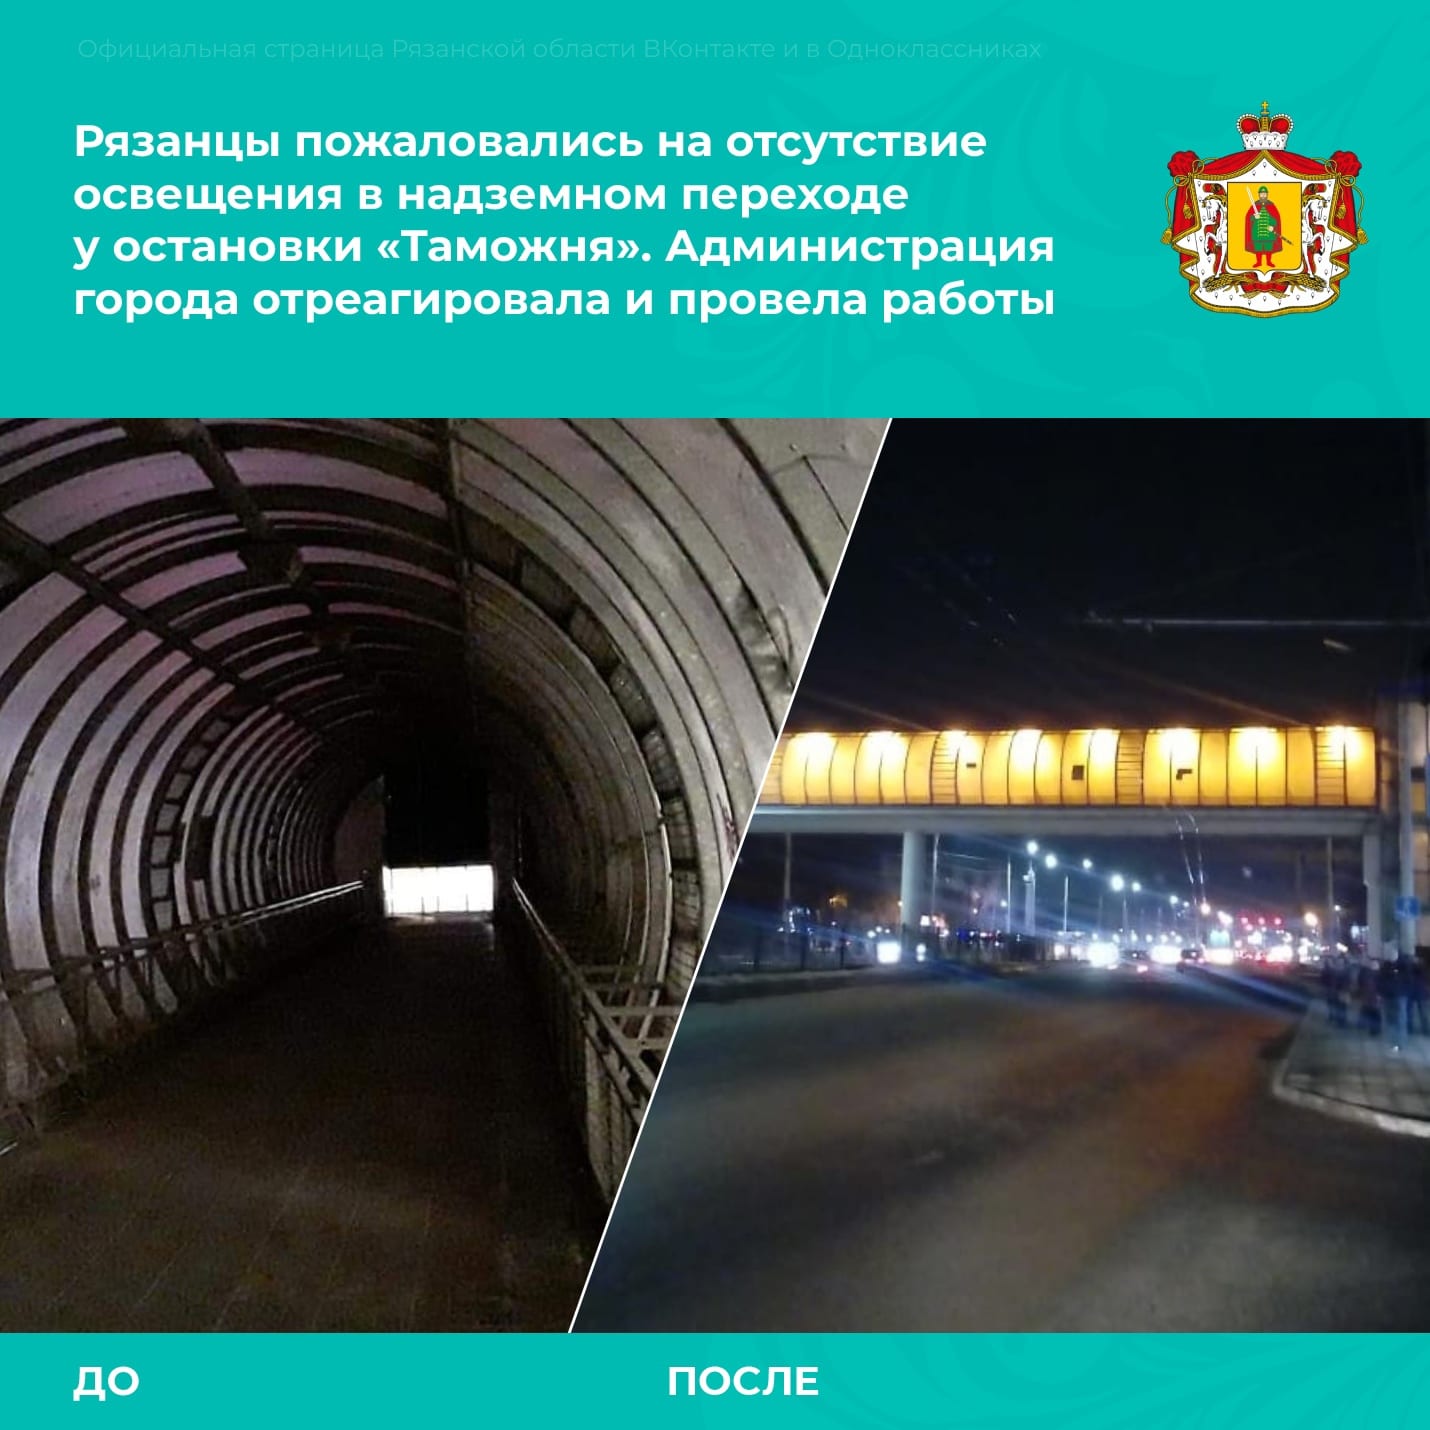 В Рязани починили освещение в надземном переходе